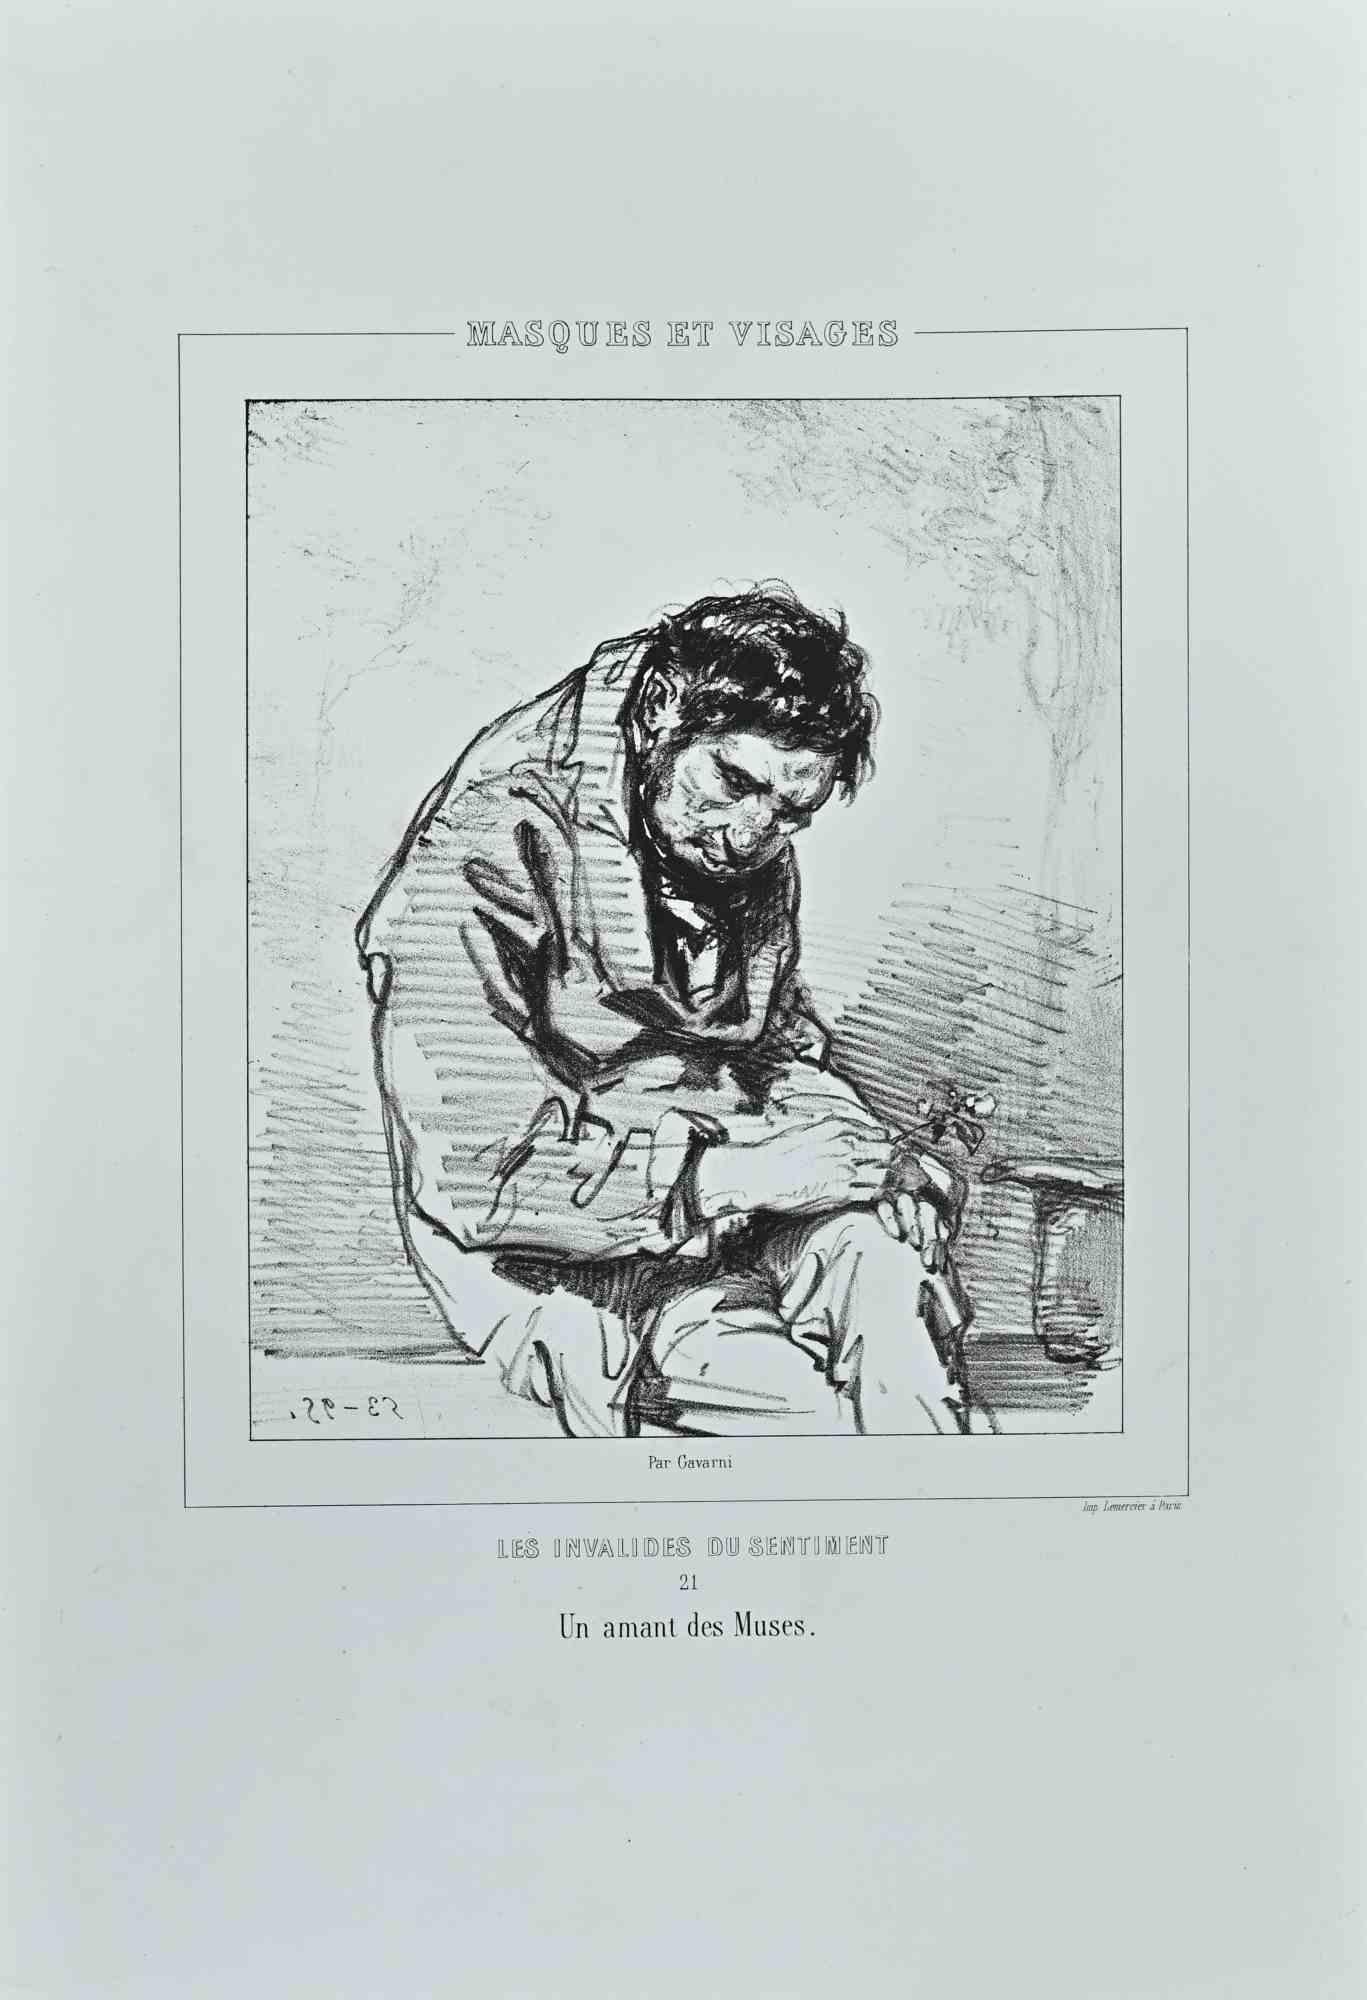 Les Invalides du Sentiment  - Original Lithograph by Paul Gavarni - 1850s